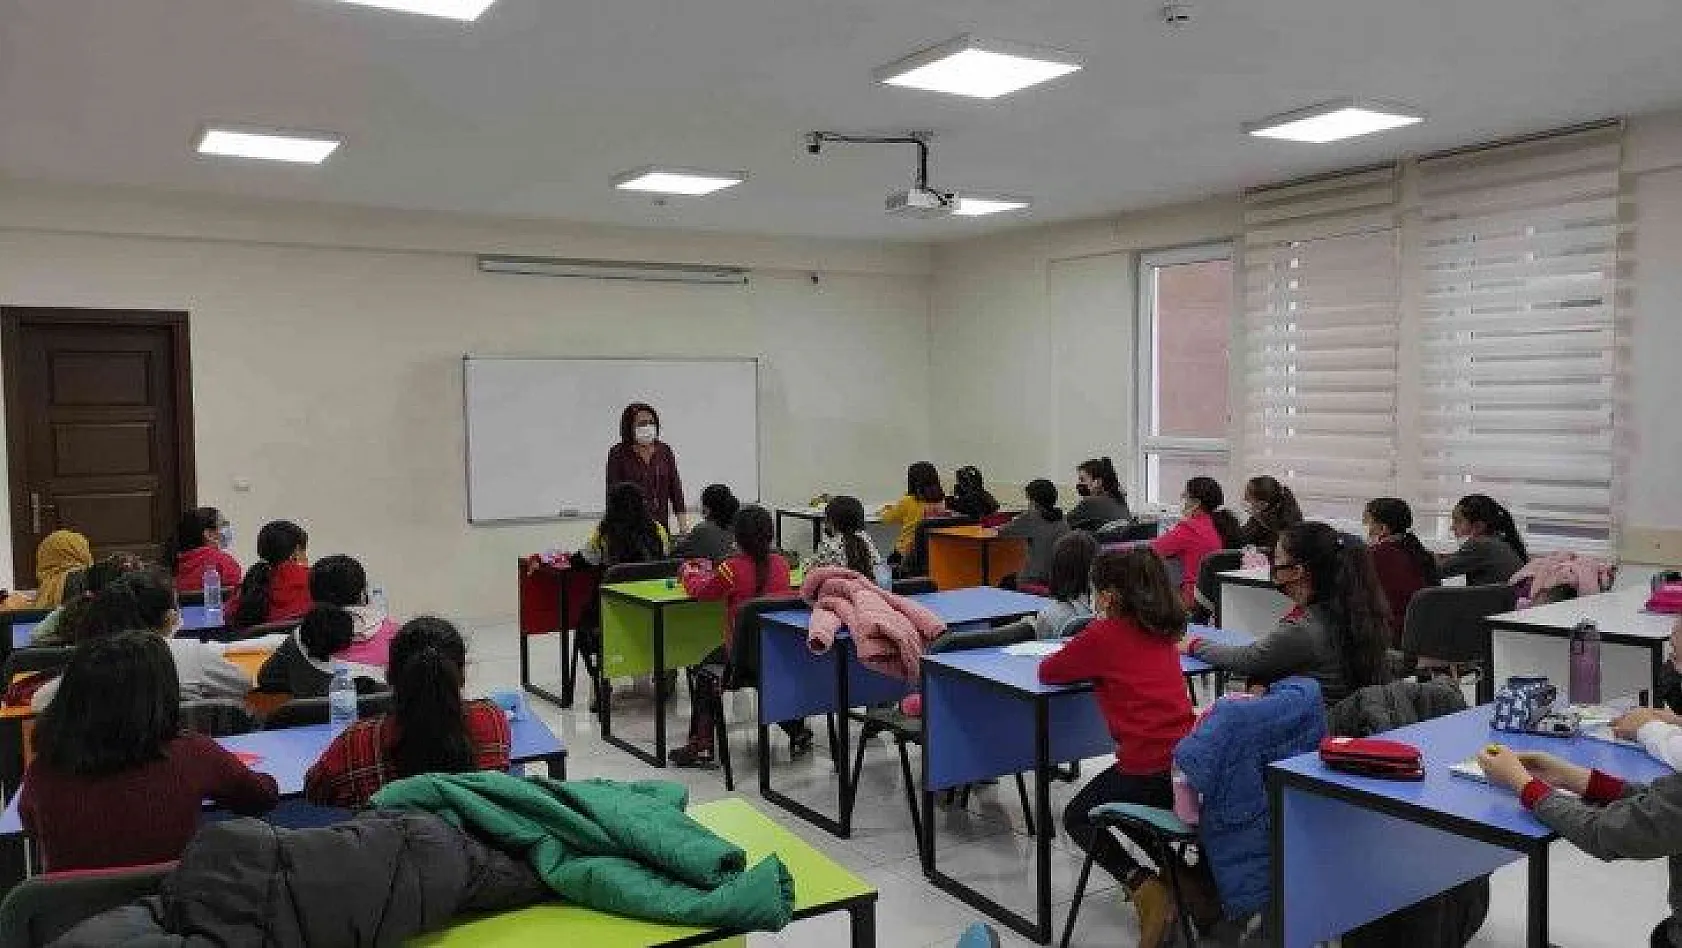 KAYMEK'ten LGS ve YKS hazırlık öğrencilerine deneme sınavı